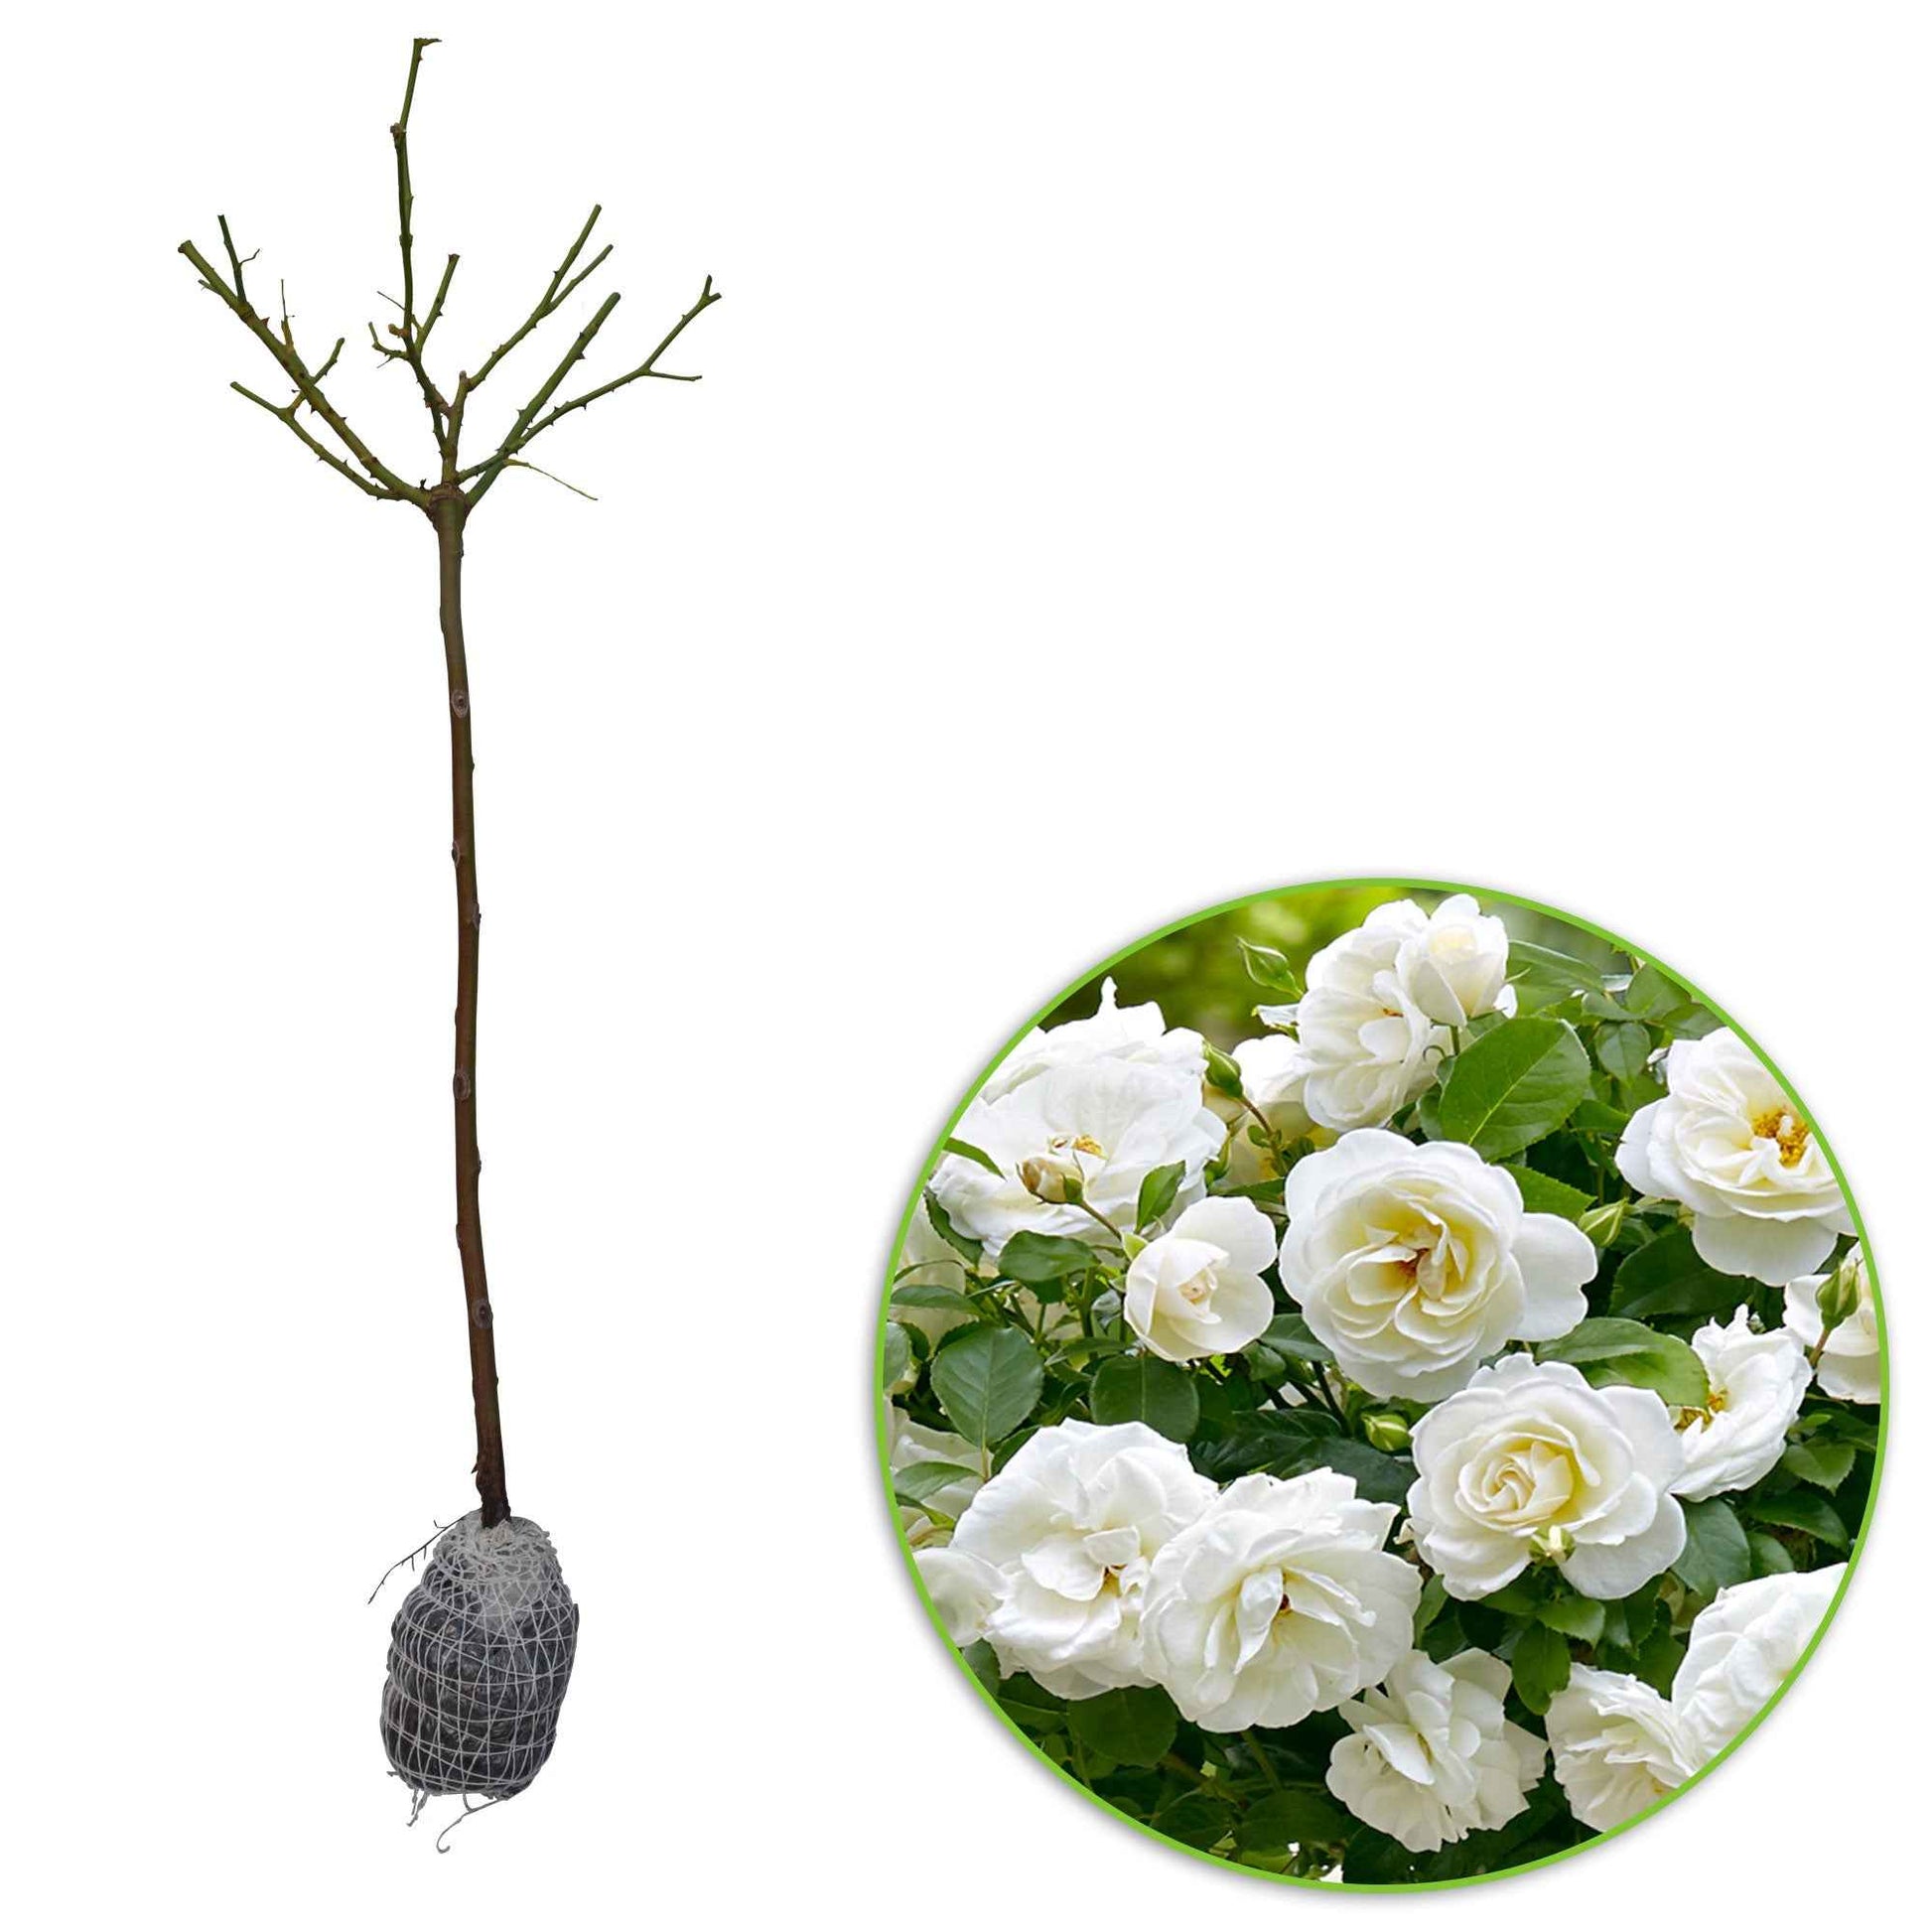 Rosier-tige Rosa 'Kristal' blanc - Plants à racines nues - Arbustes sur tige